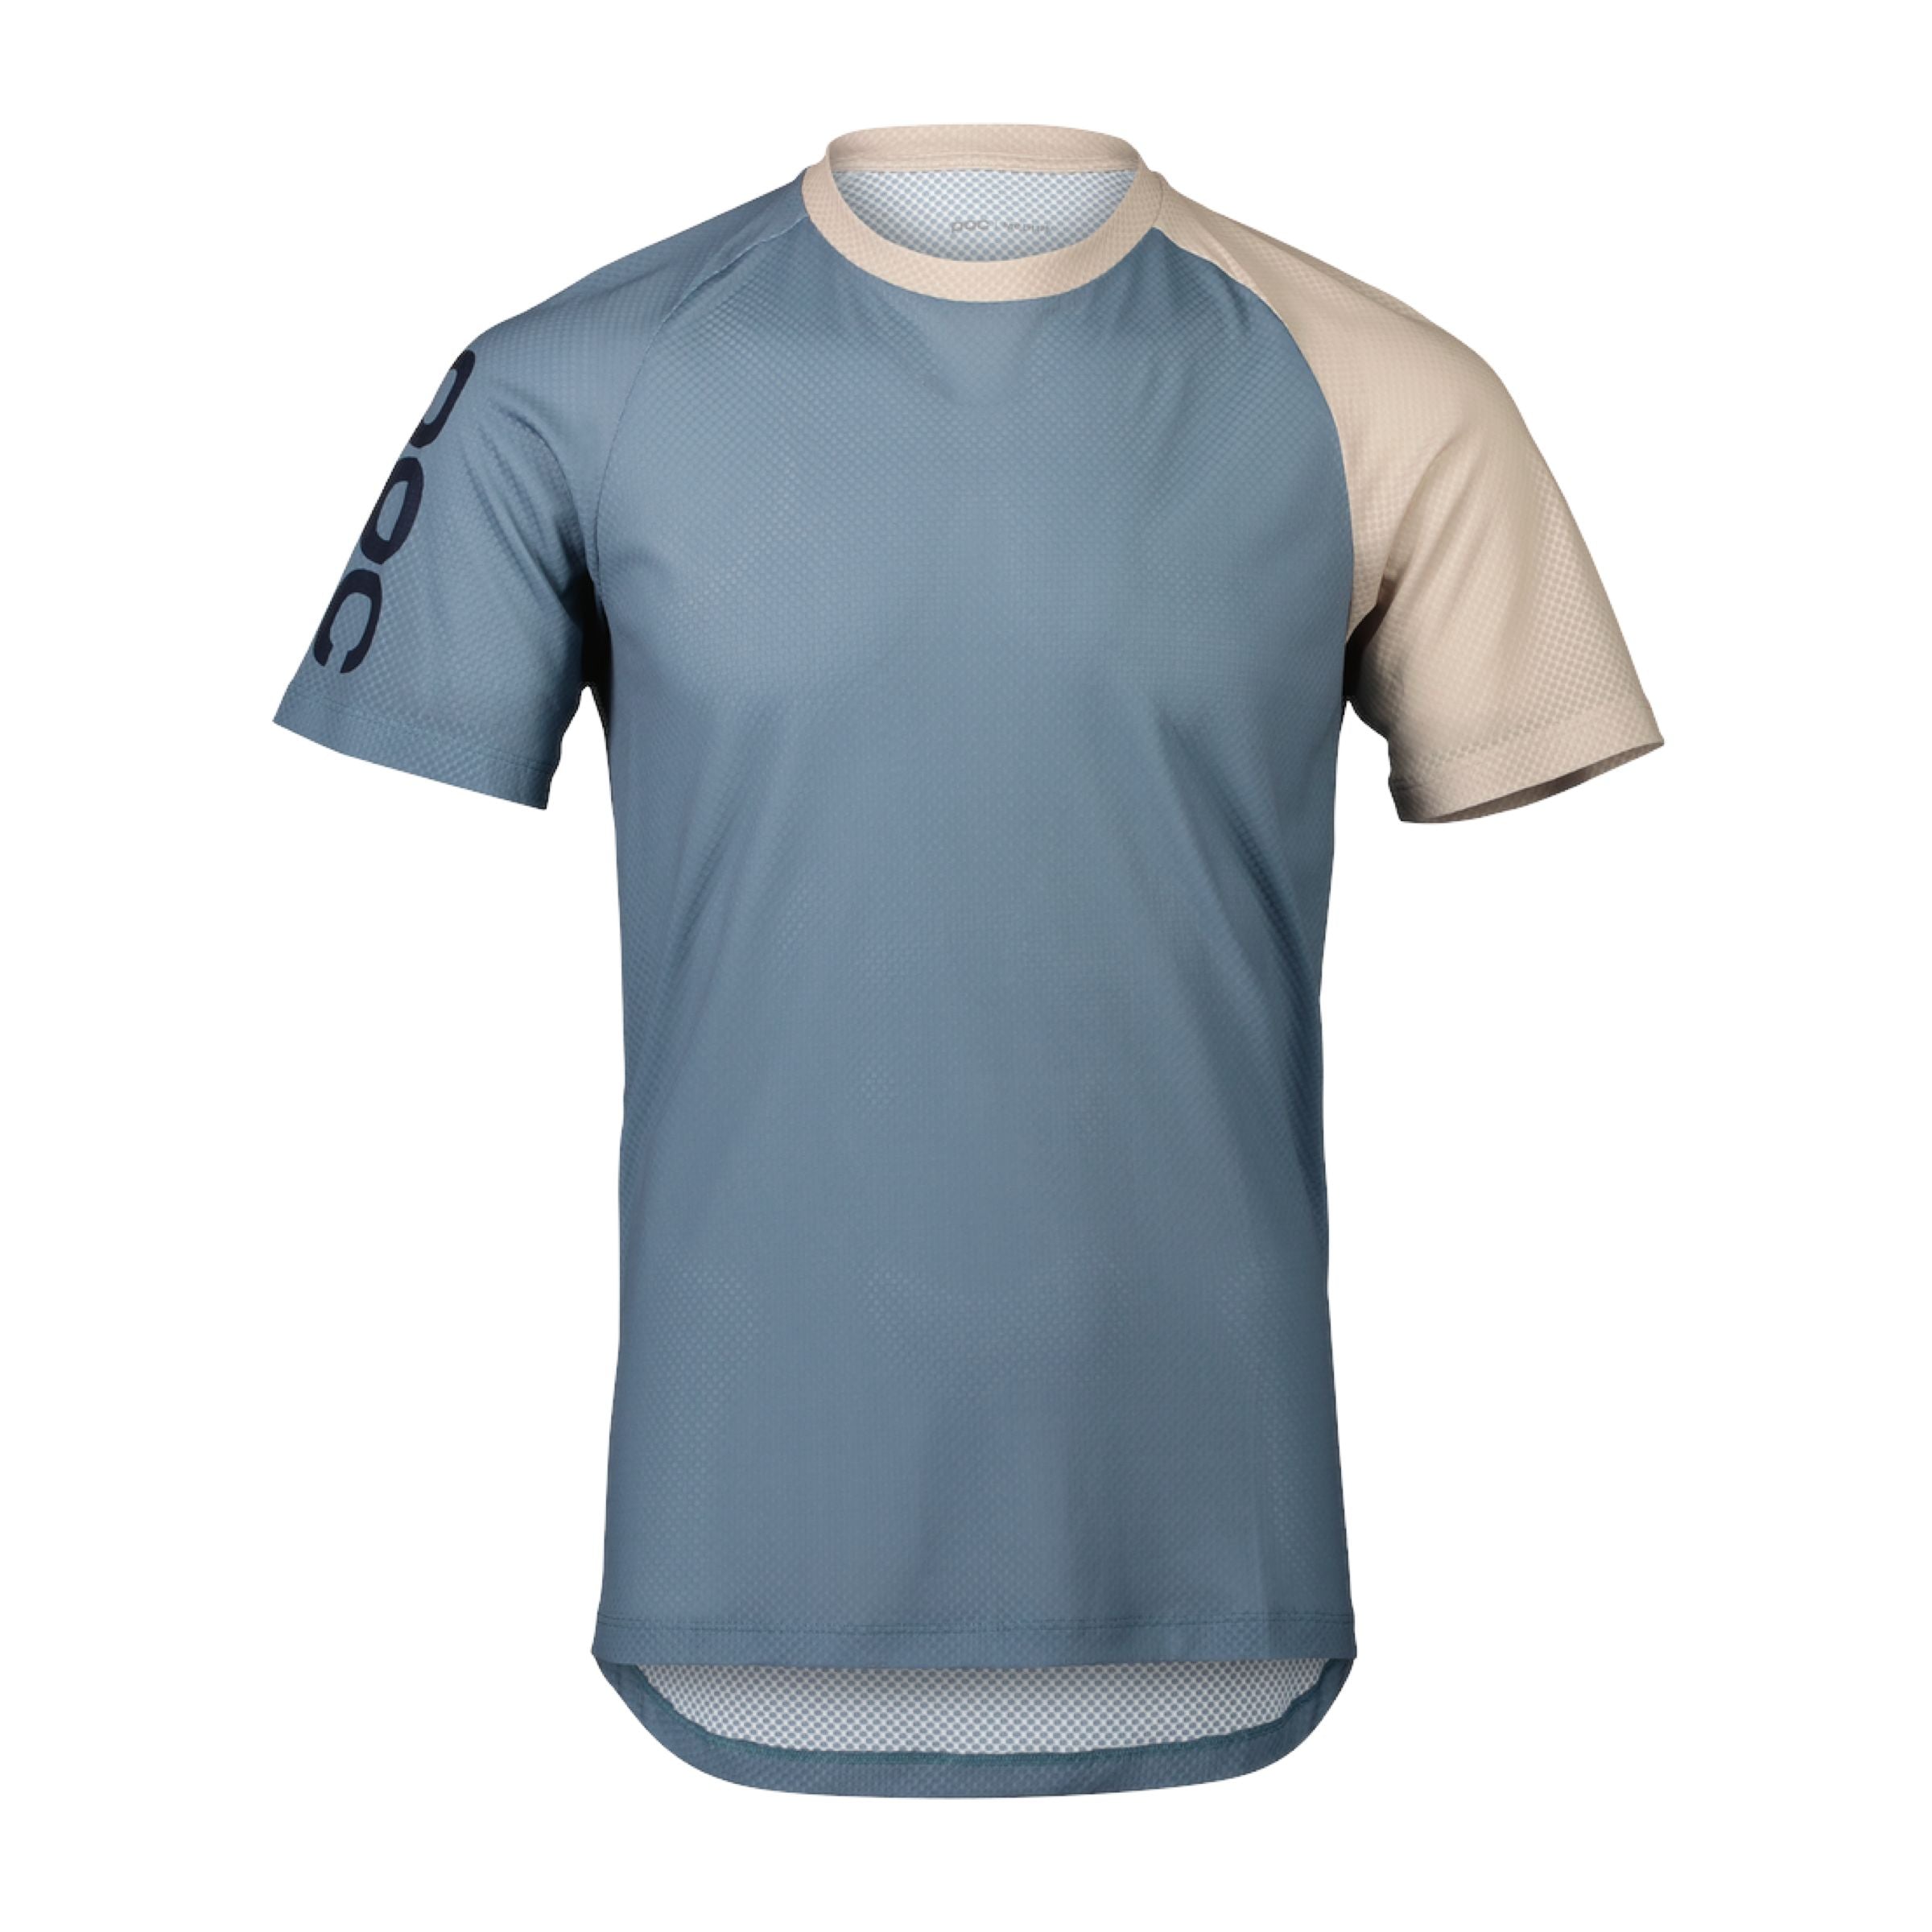 Men's MTB Pure T-shirt Calcite Blue/Light Sandstone Beige 